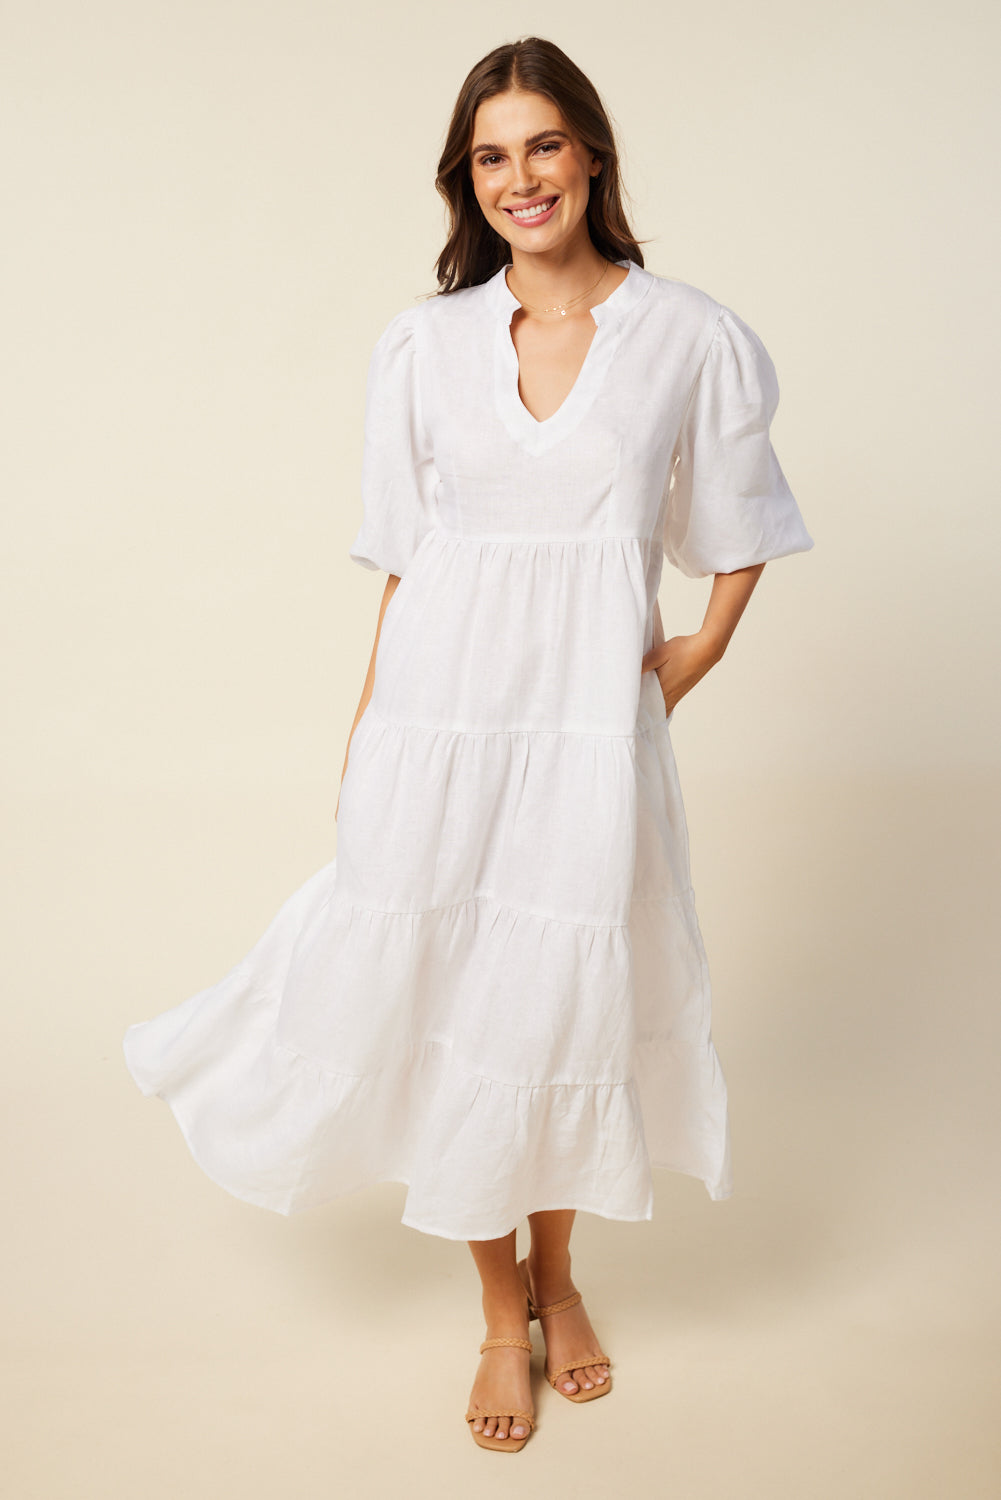 Sabre V-Neck Dress in White (6956143050826)